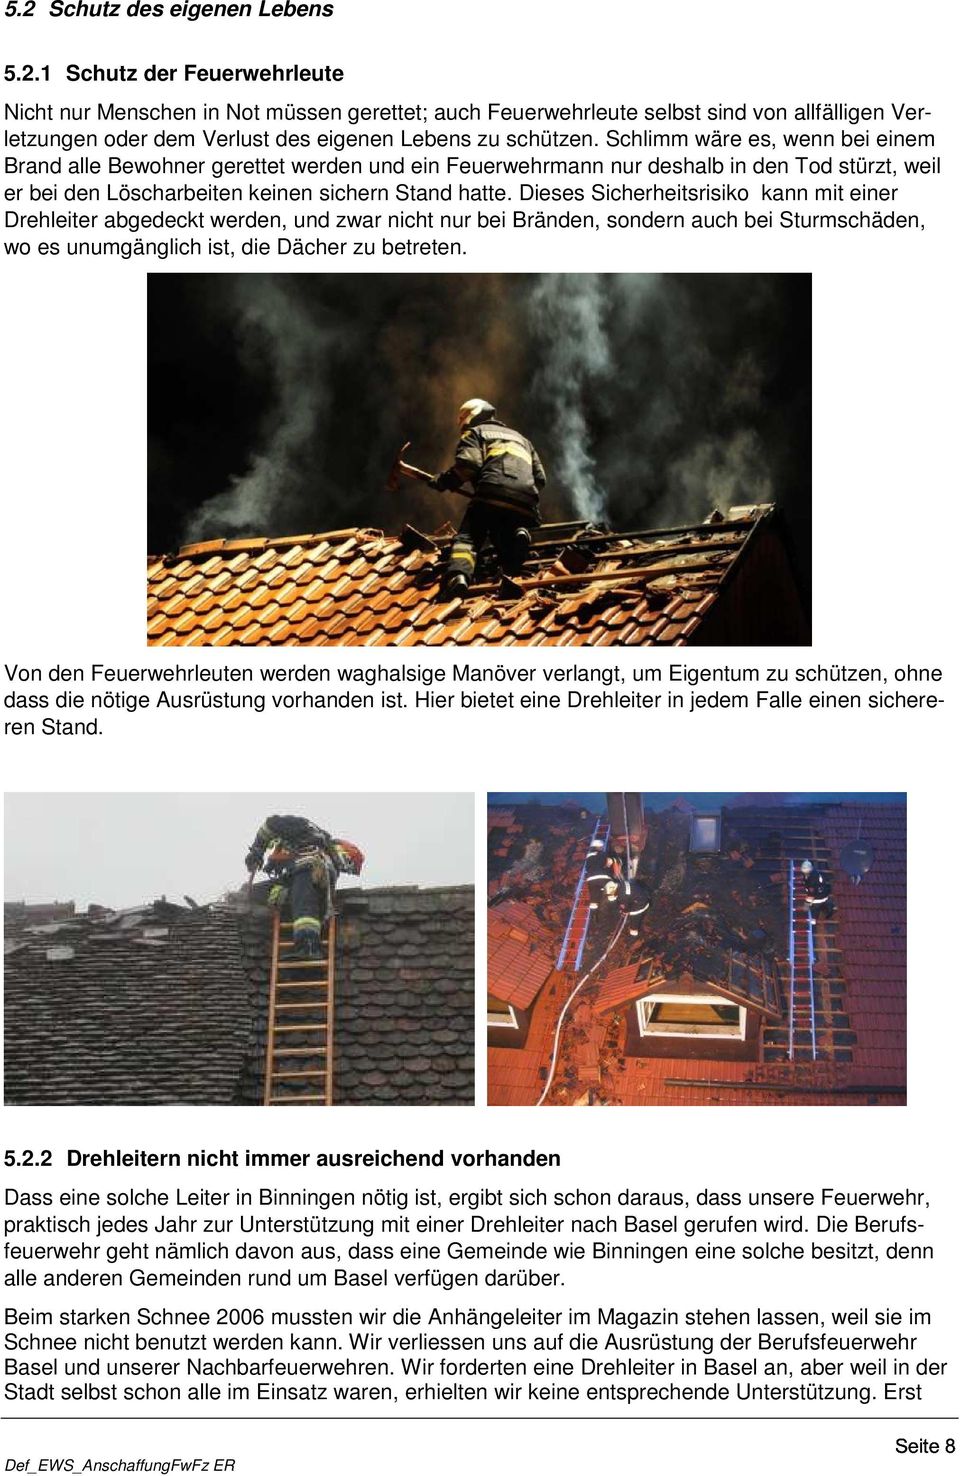 Dieses Sicherheitsrisiko kann mit einer Drehleiter abgedeckt werden, und zwar nicht nur bei Bränden, sondern auch bei Sturmschäden, wo es unumgänglich ist, die Dächer zu betreten.